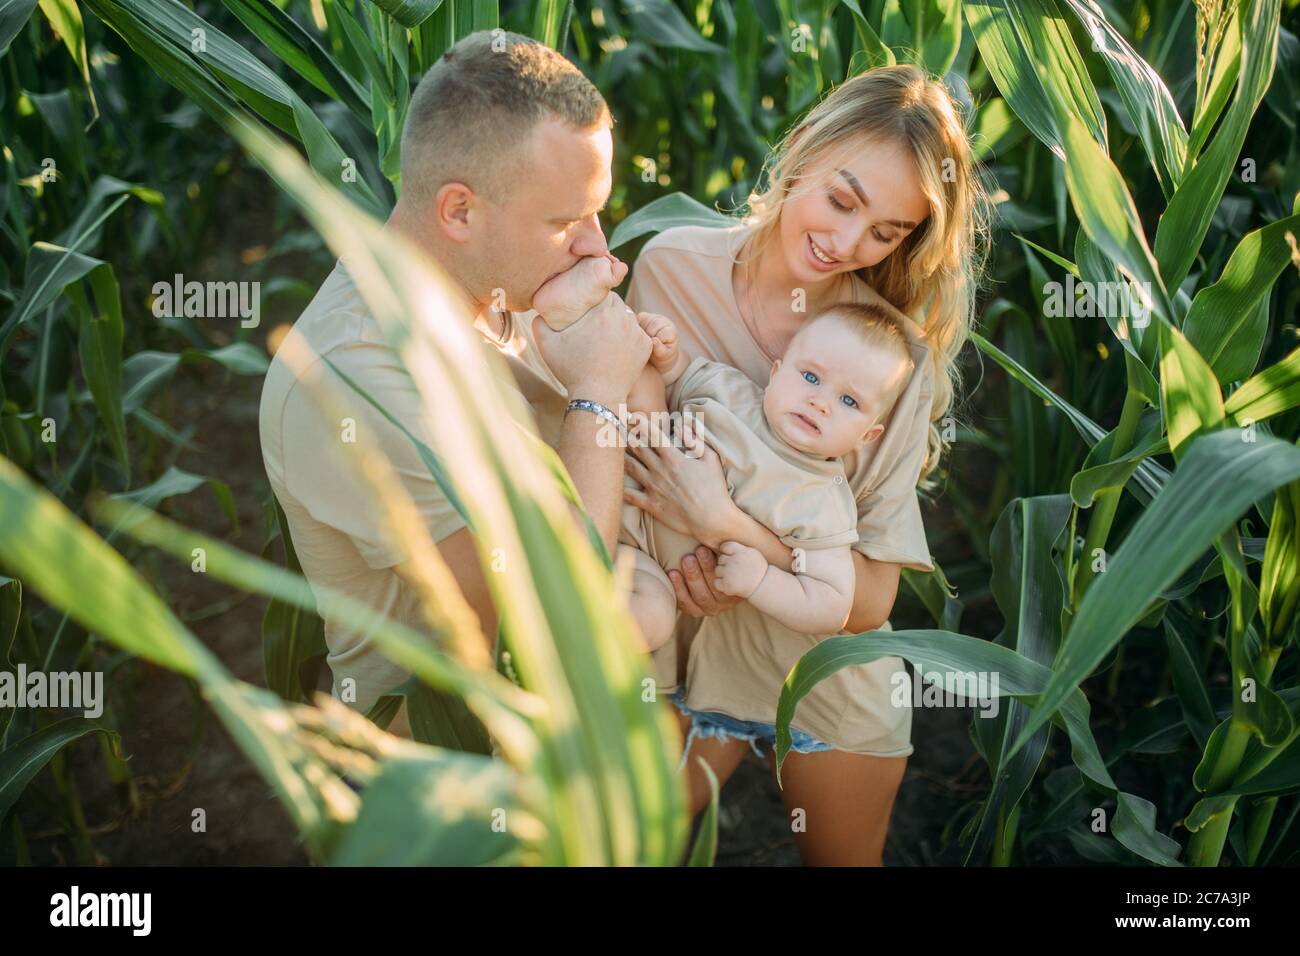 Glückliche junge Eltern haben Spaß und spielen mit ihrem Baby im Maisfeld. Stockfoto